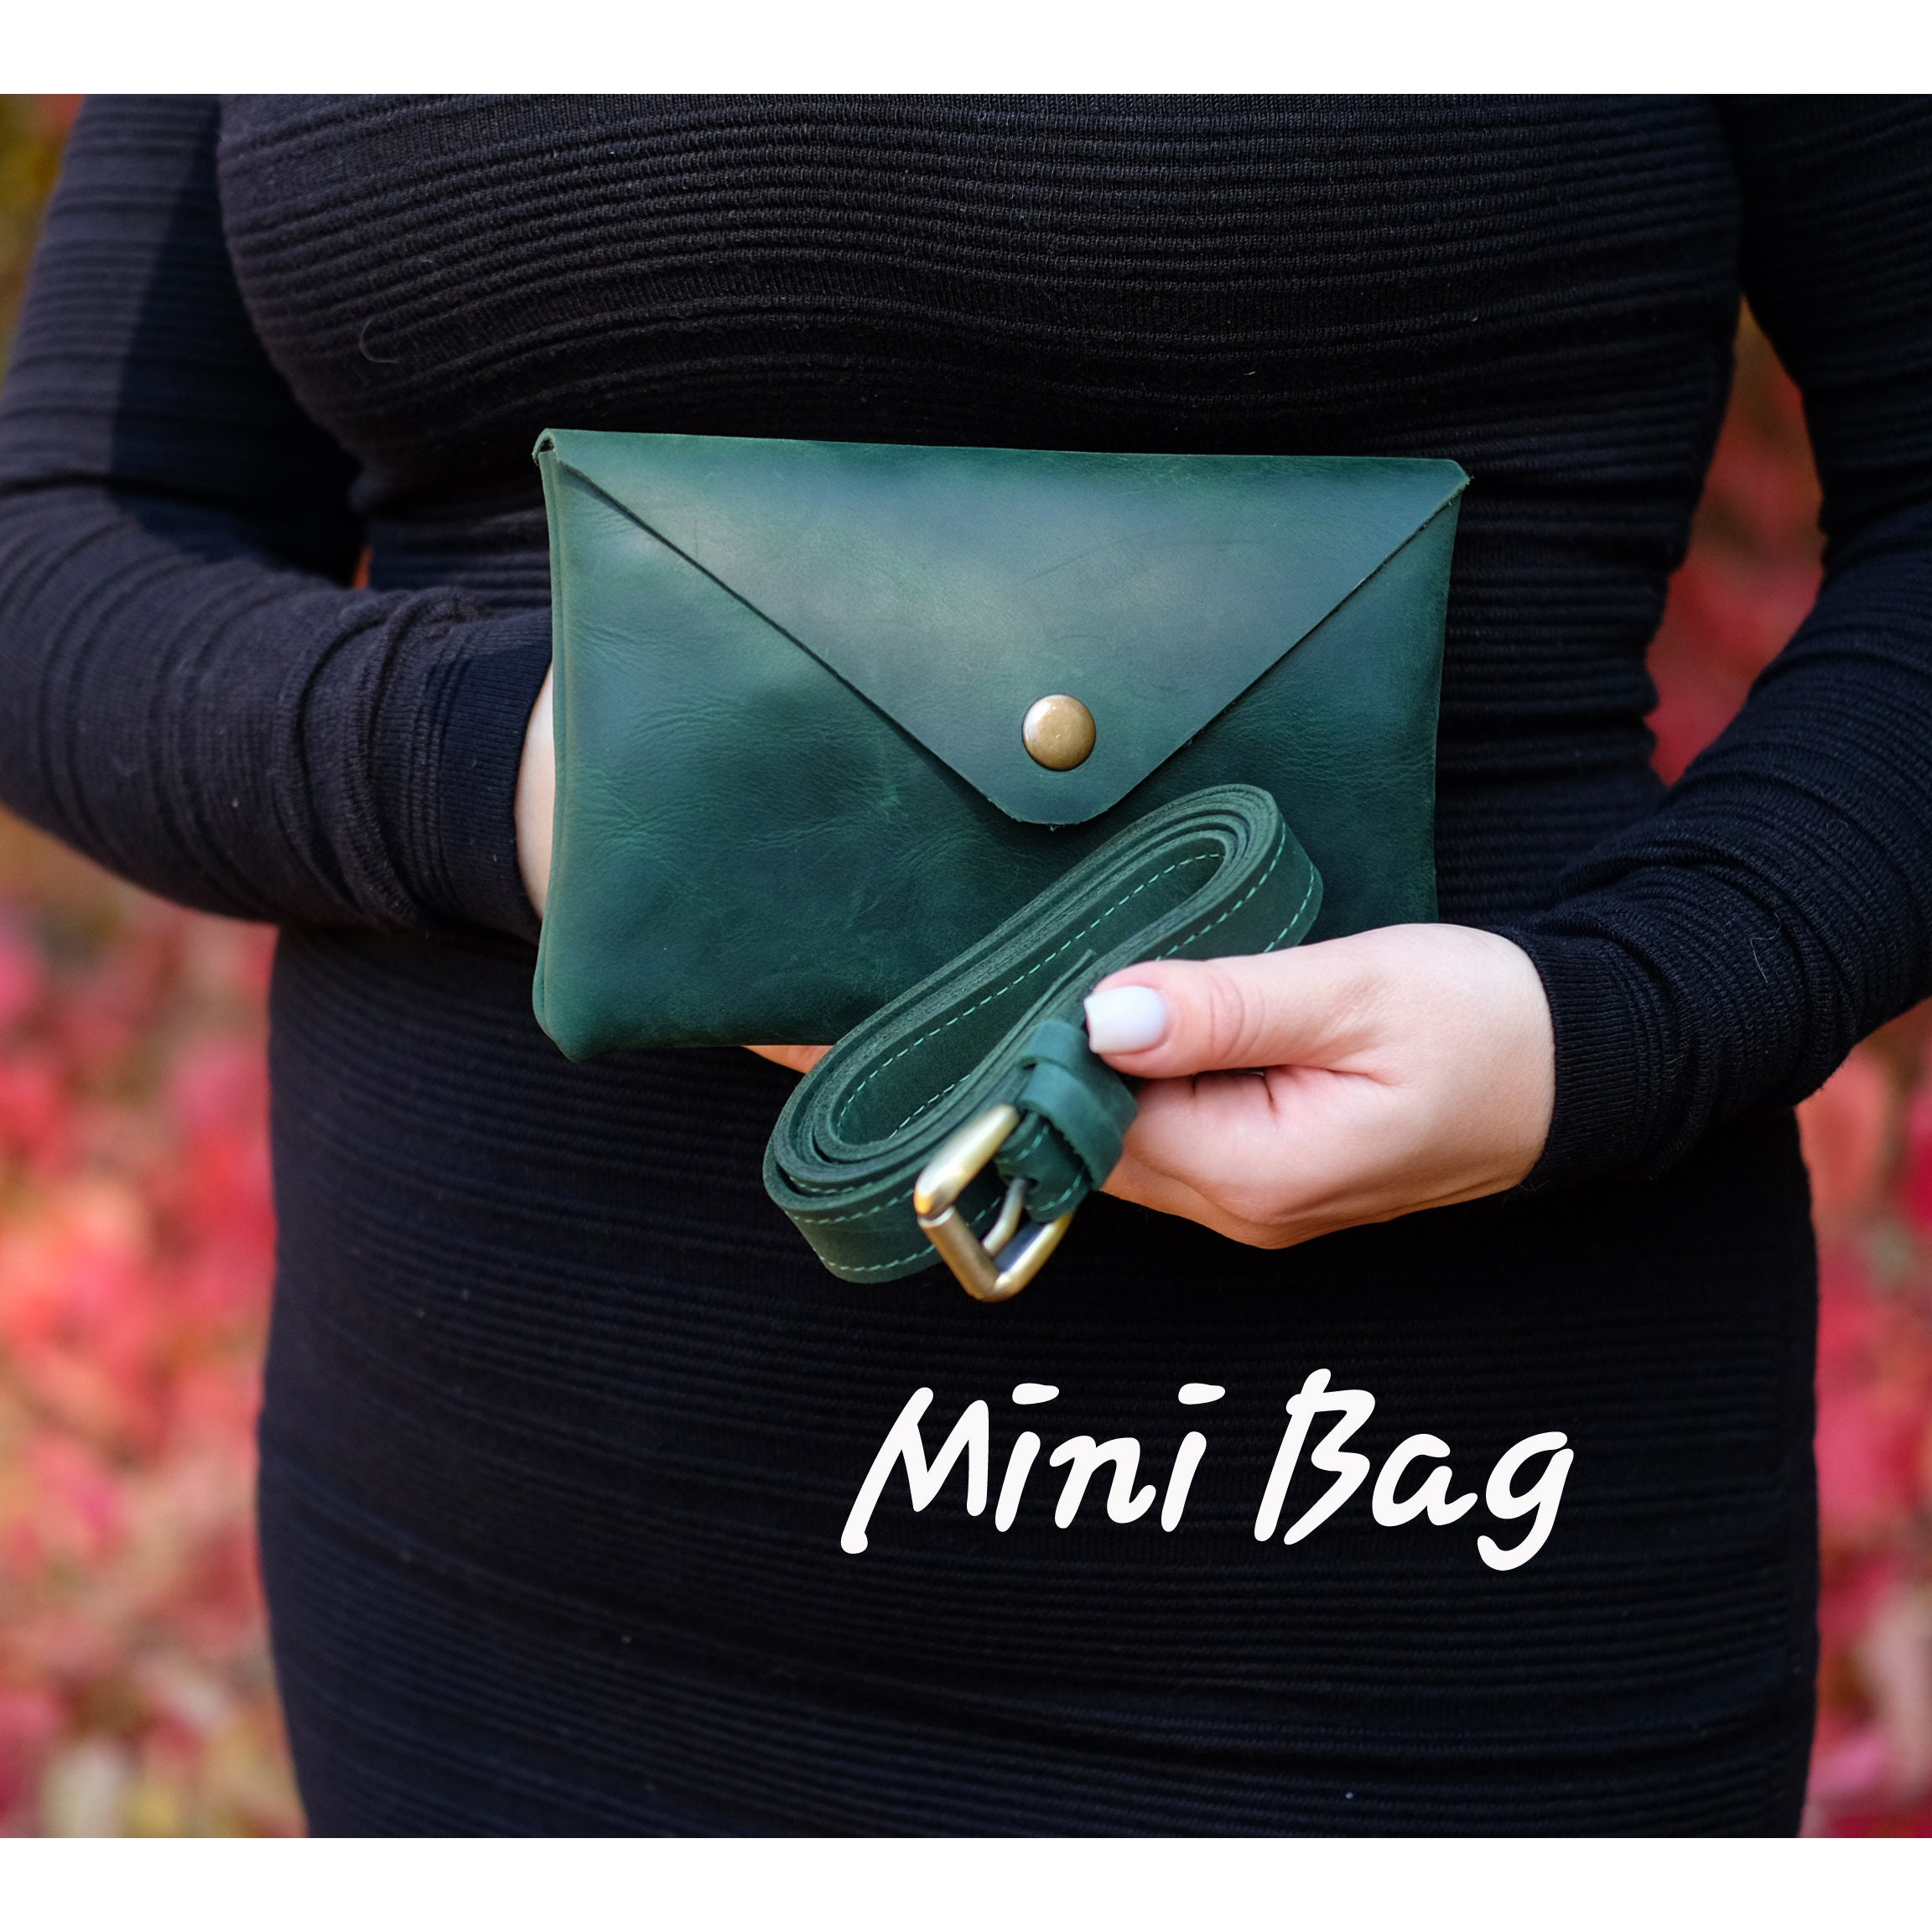 Vhitler Mini Belt Bag Waist Bag for Women Fashionable Small Waist Bag Belt Bags for Women Trendy Y2K Accessories (Black,Small)